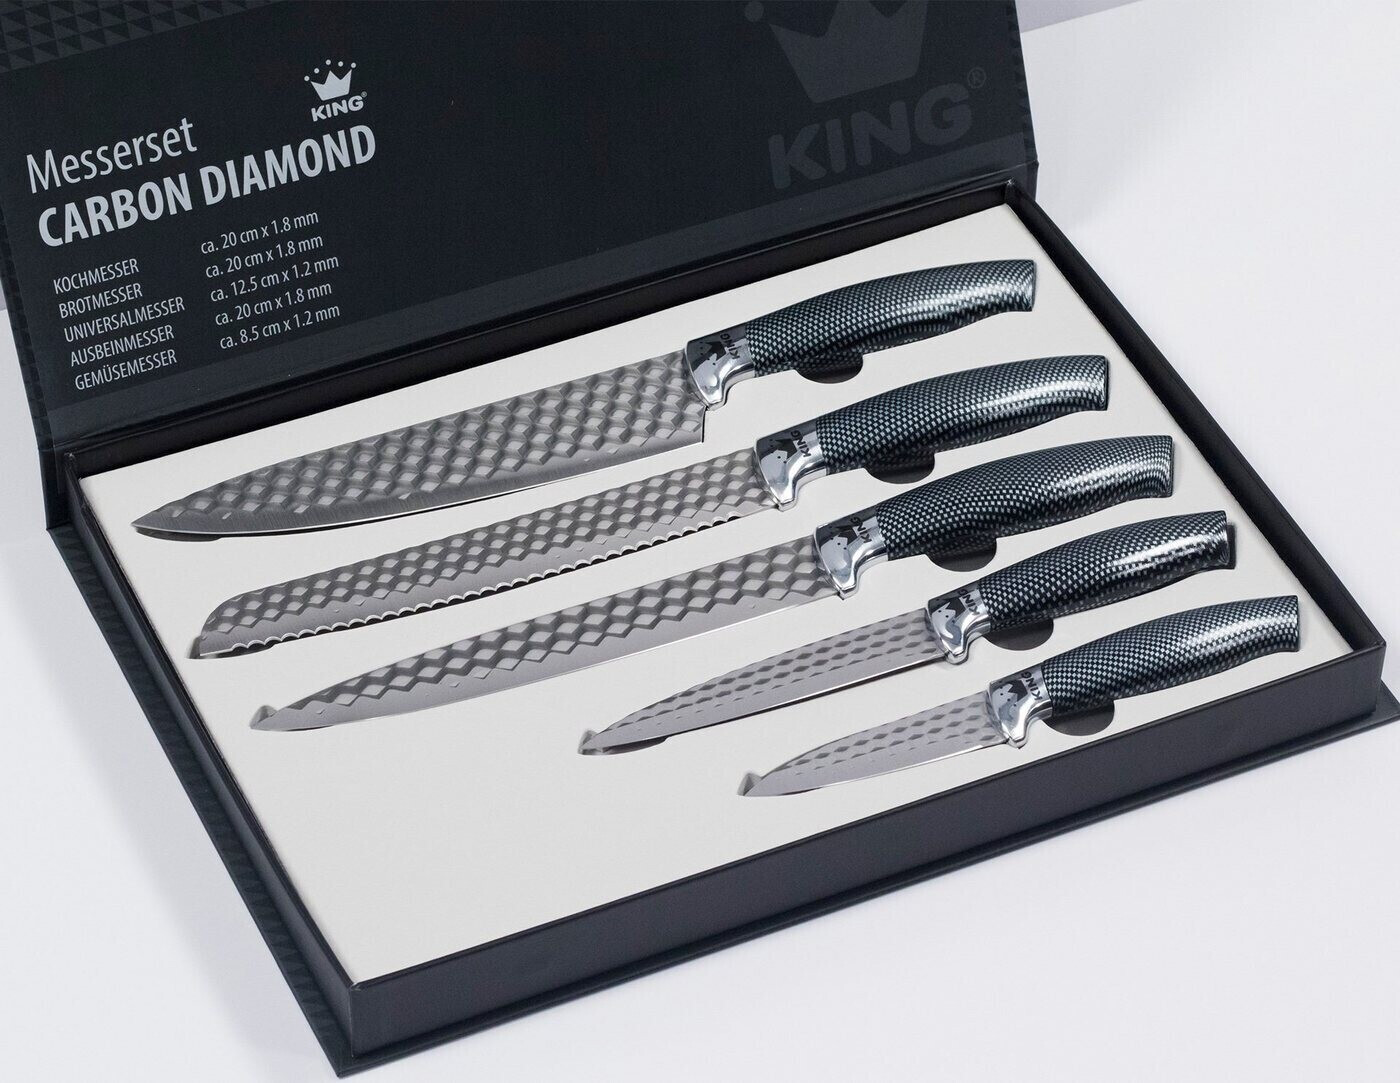 King Carbon Diamond Messer-Set 5-teilig ab 22,99 € | Preisvergleich bei